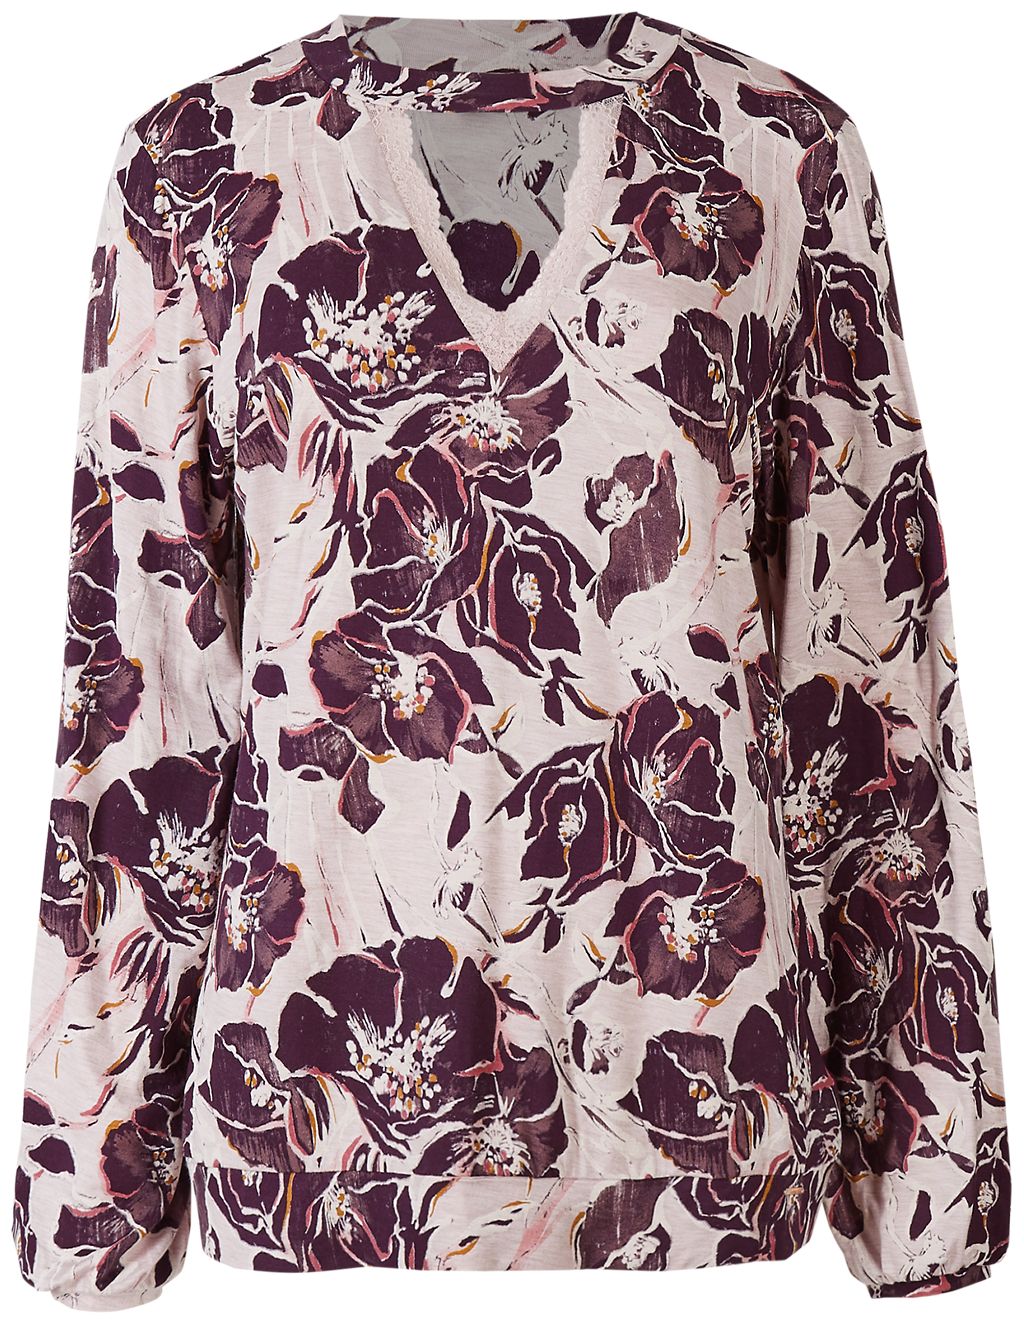 Floral Print Long Sleeve Pyjama Top 5 of 6